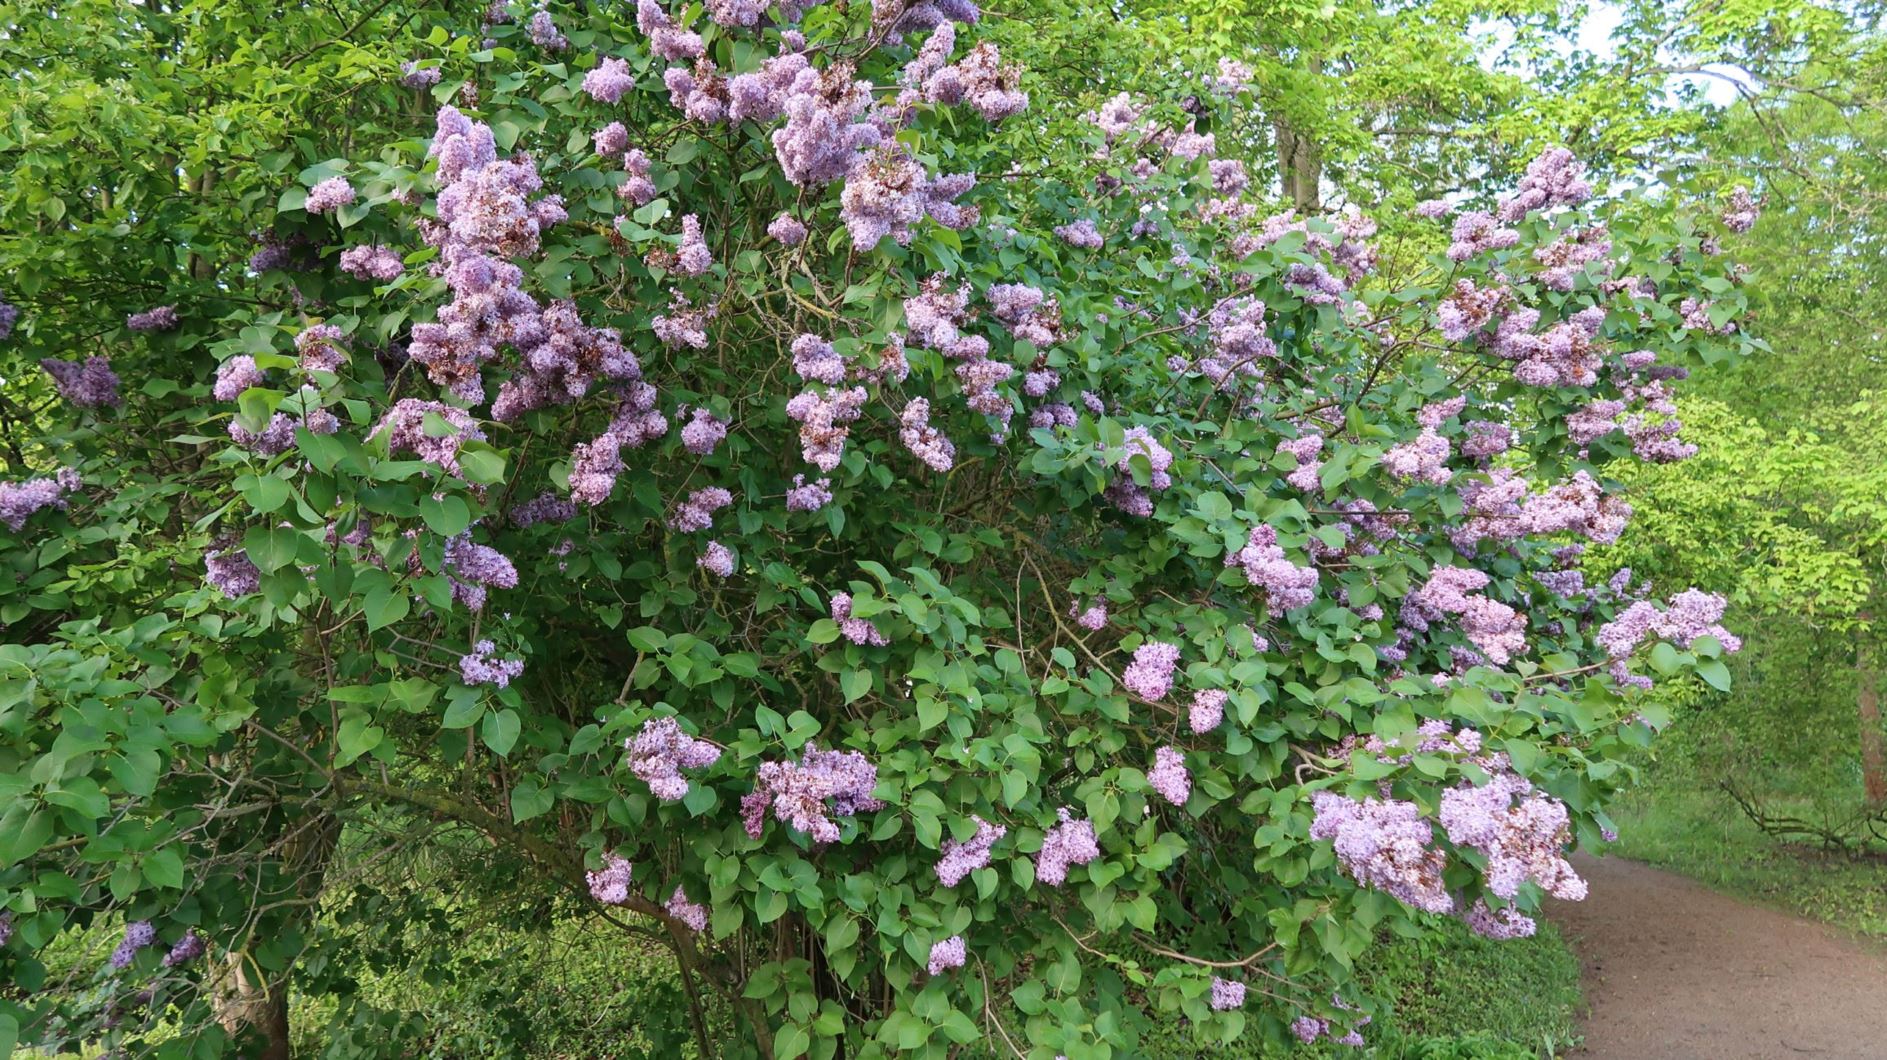 Syringa vulgaris - Gewöhnlicher Flieder, Common Lilac